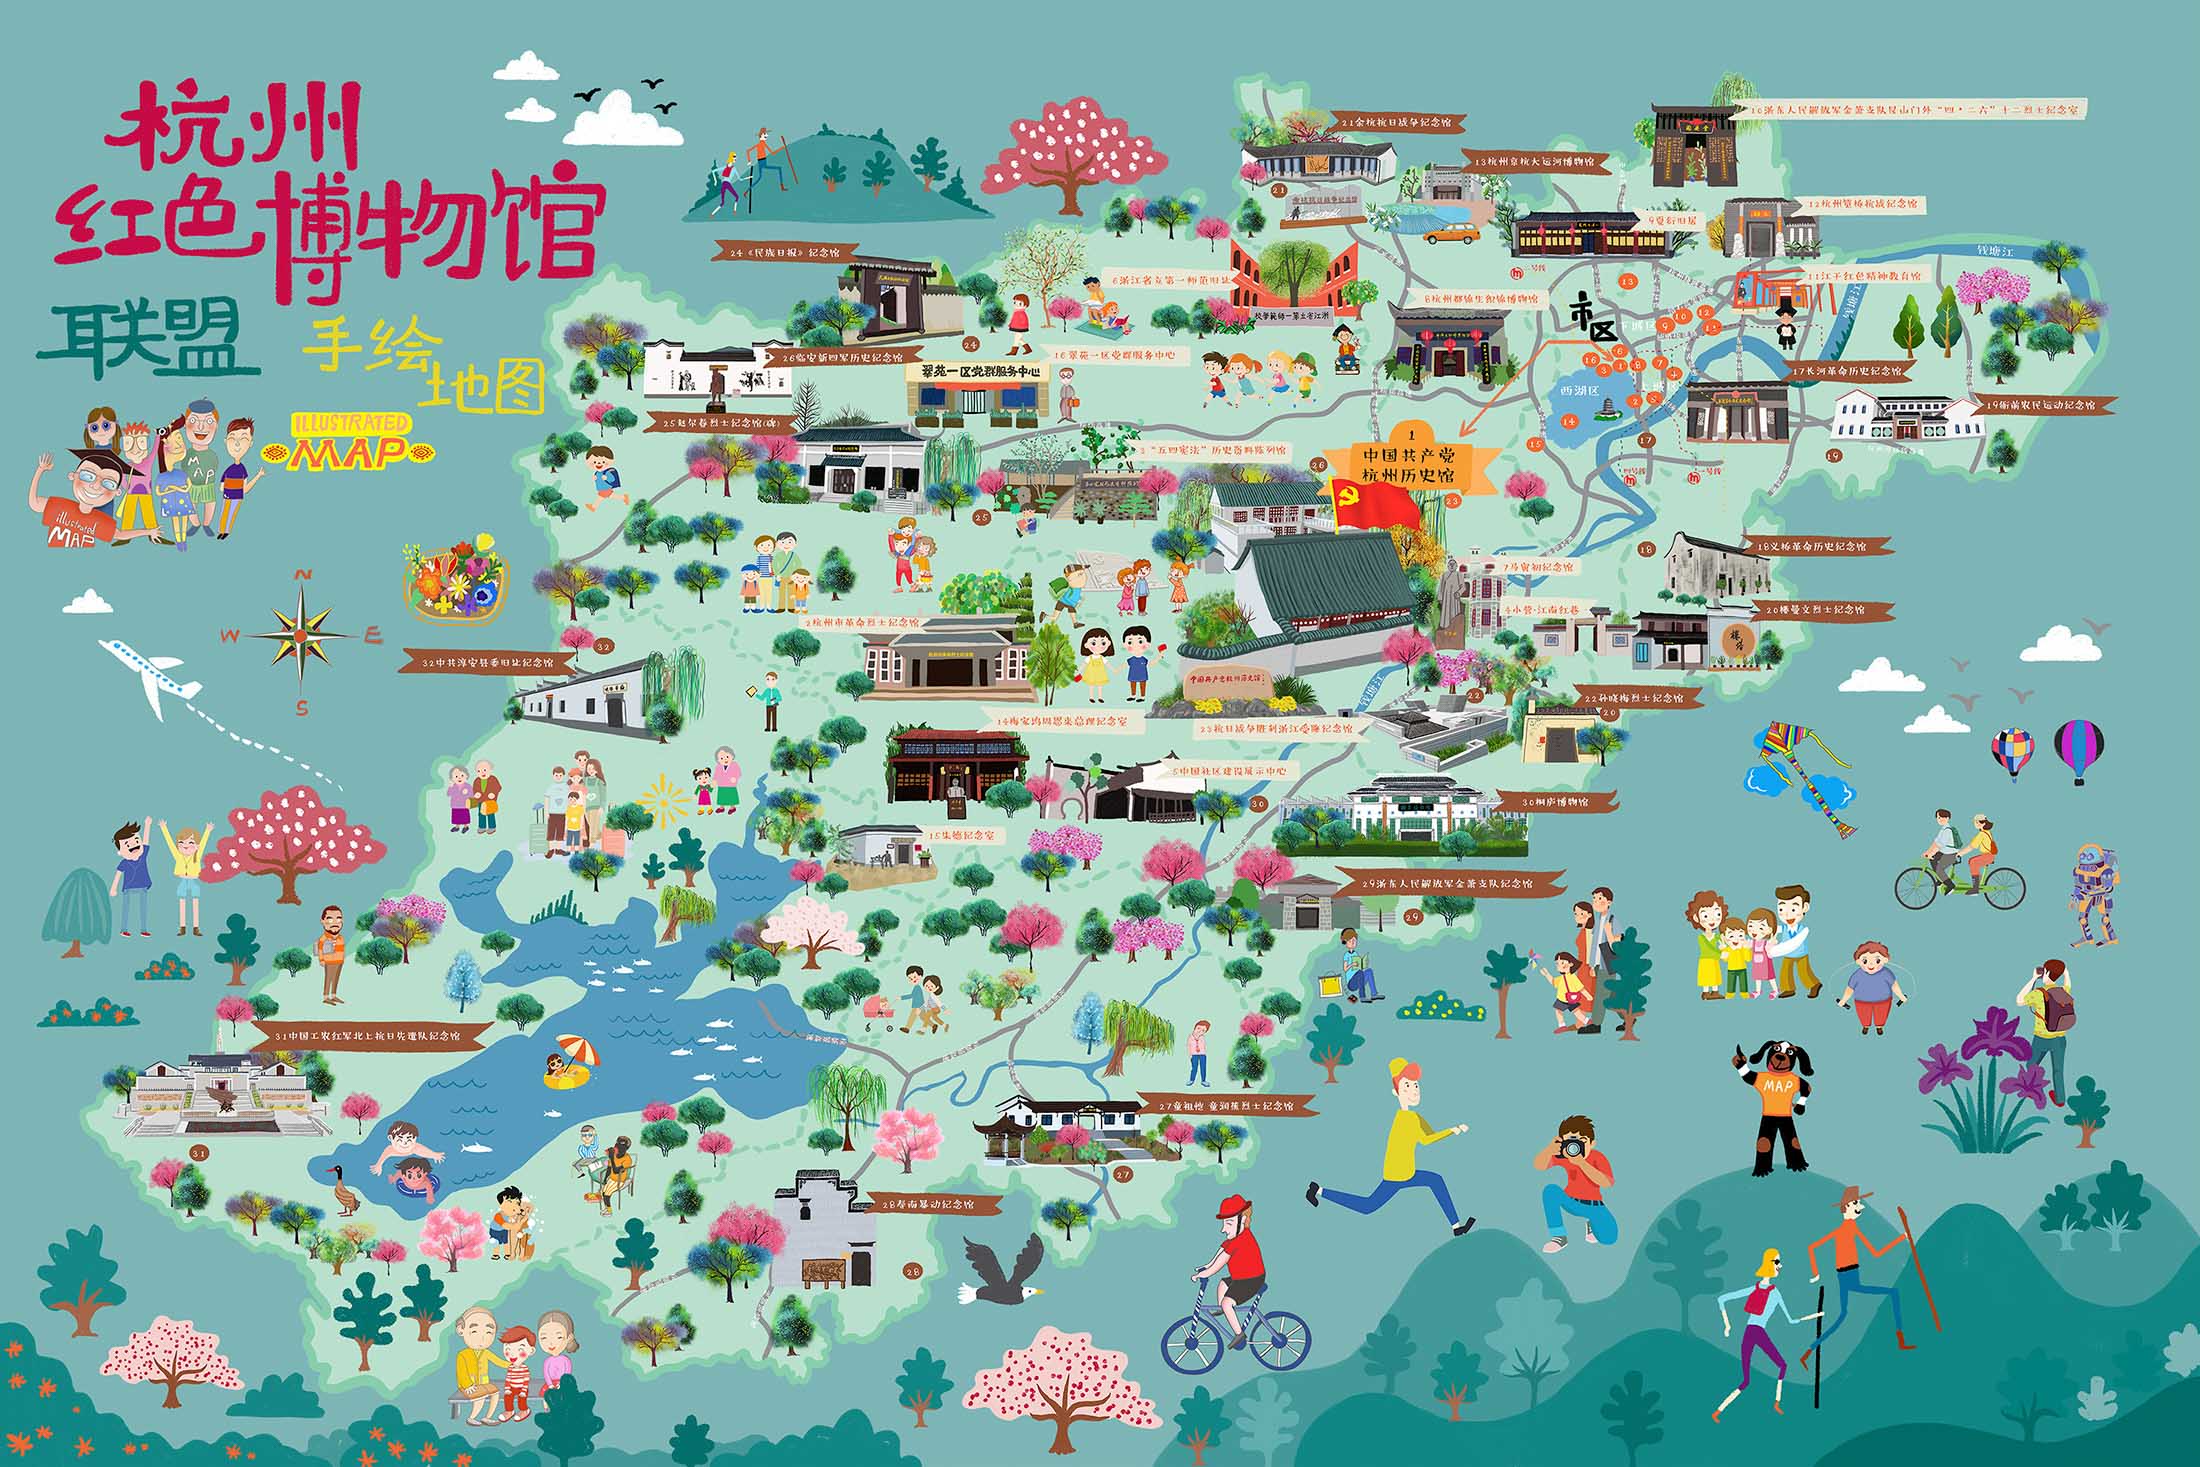 南林乡手绘地图与科技的完美结合 